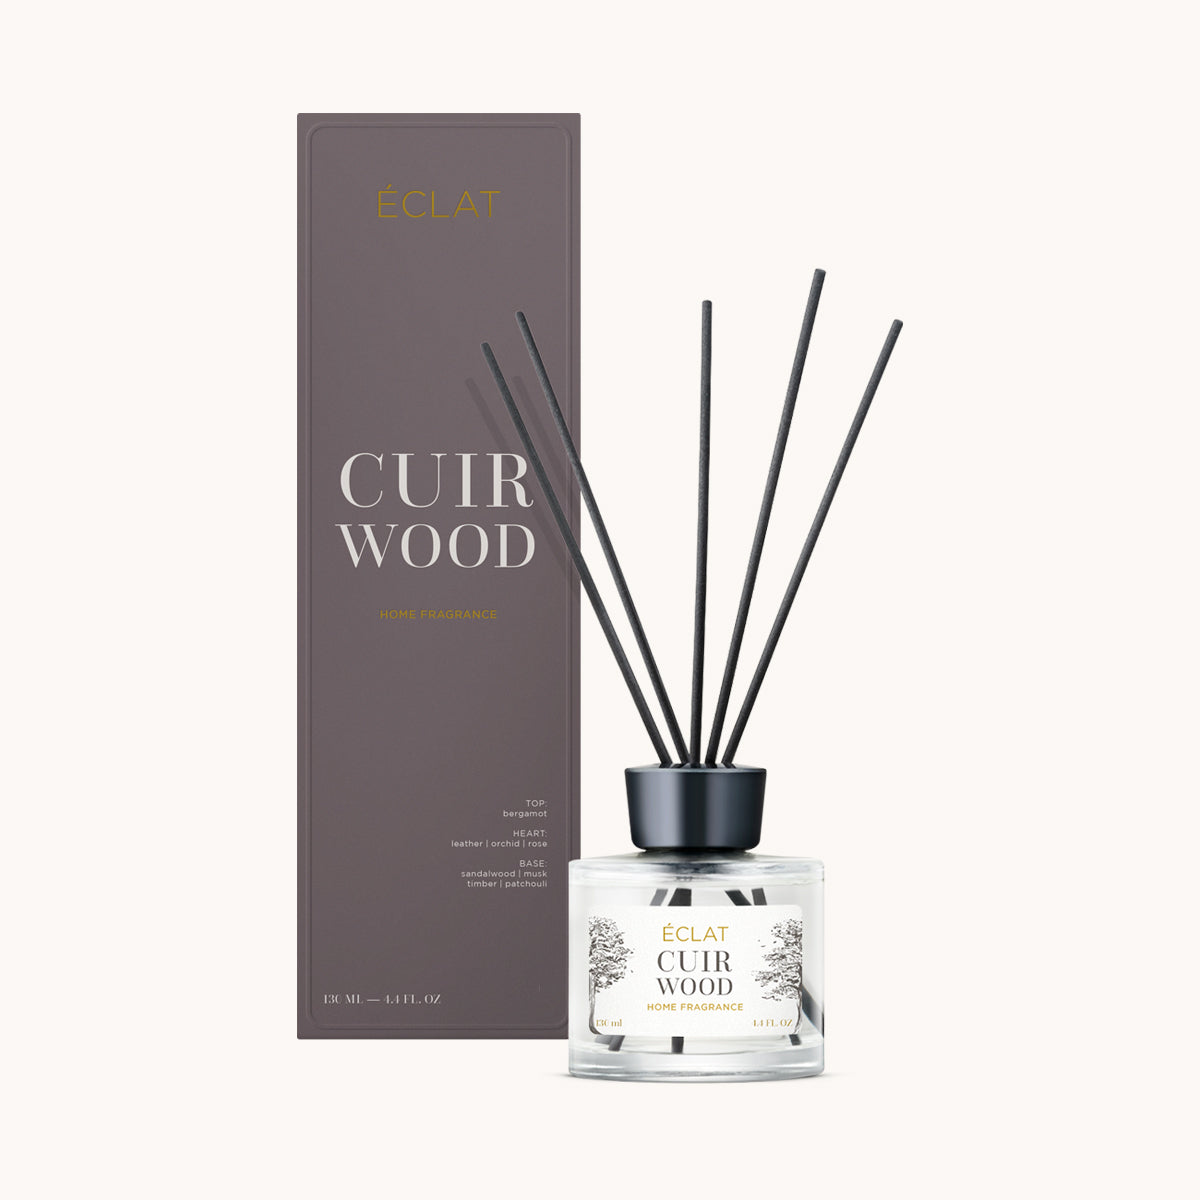 ÉCLAT Cuir Wood Room Fragrance Sticks